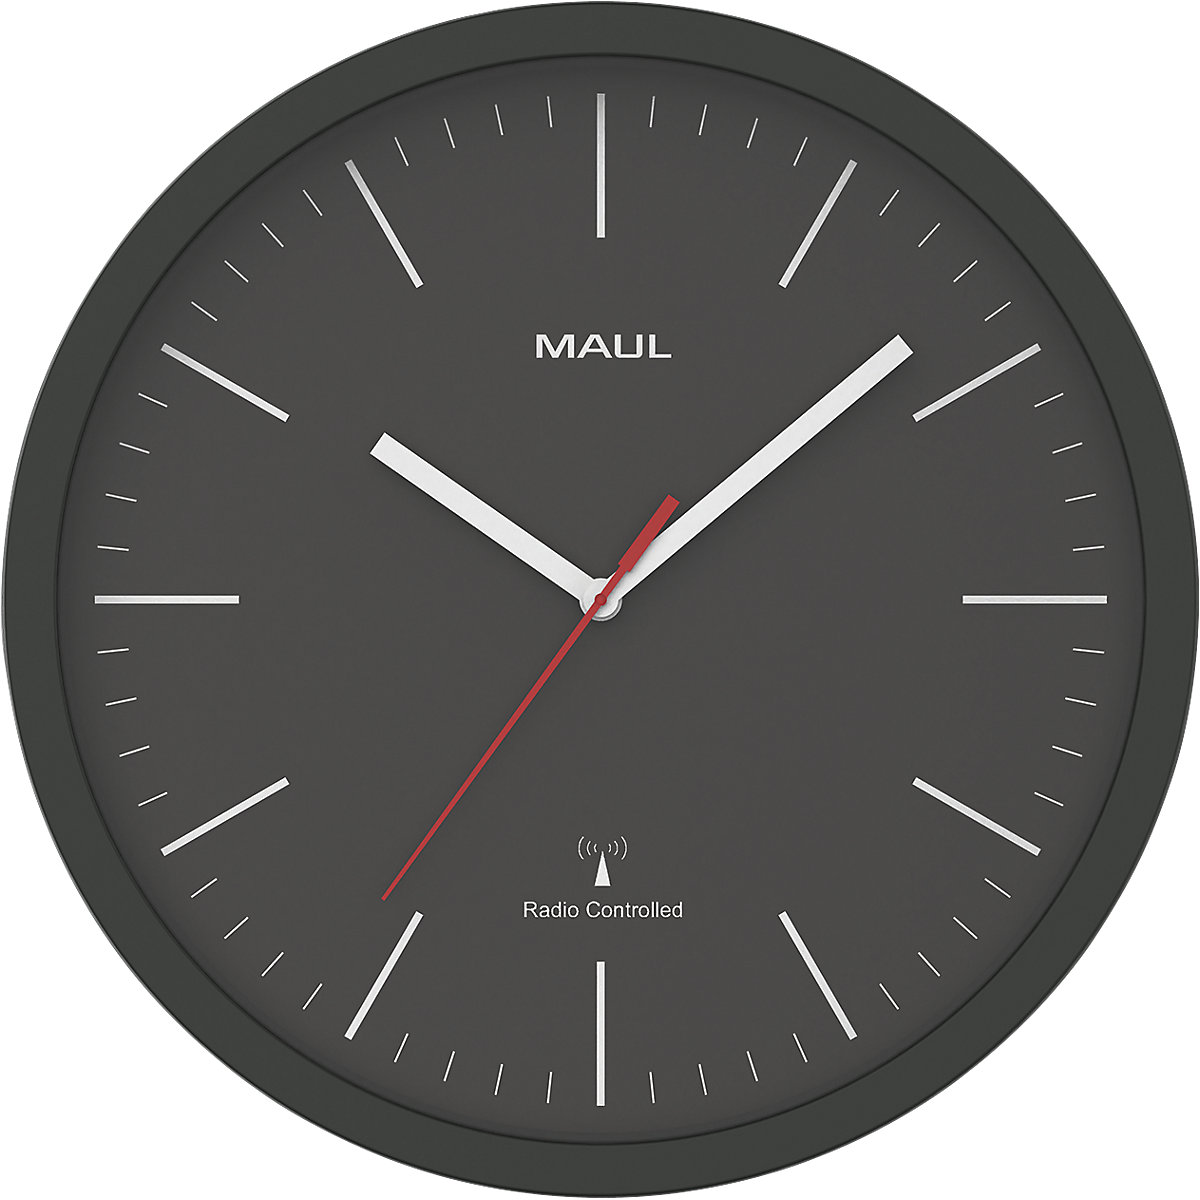 Orologio da parete MAULjump – MAUL, orologio radiocontrollato, nero-2